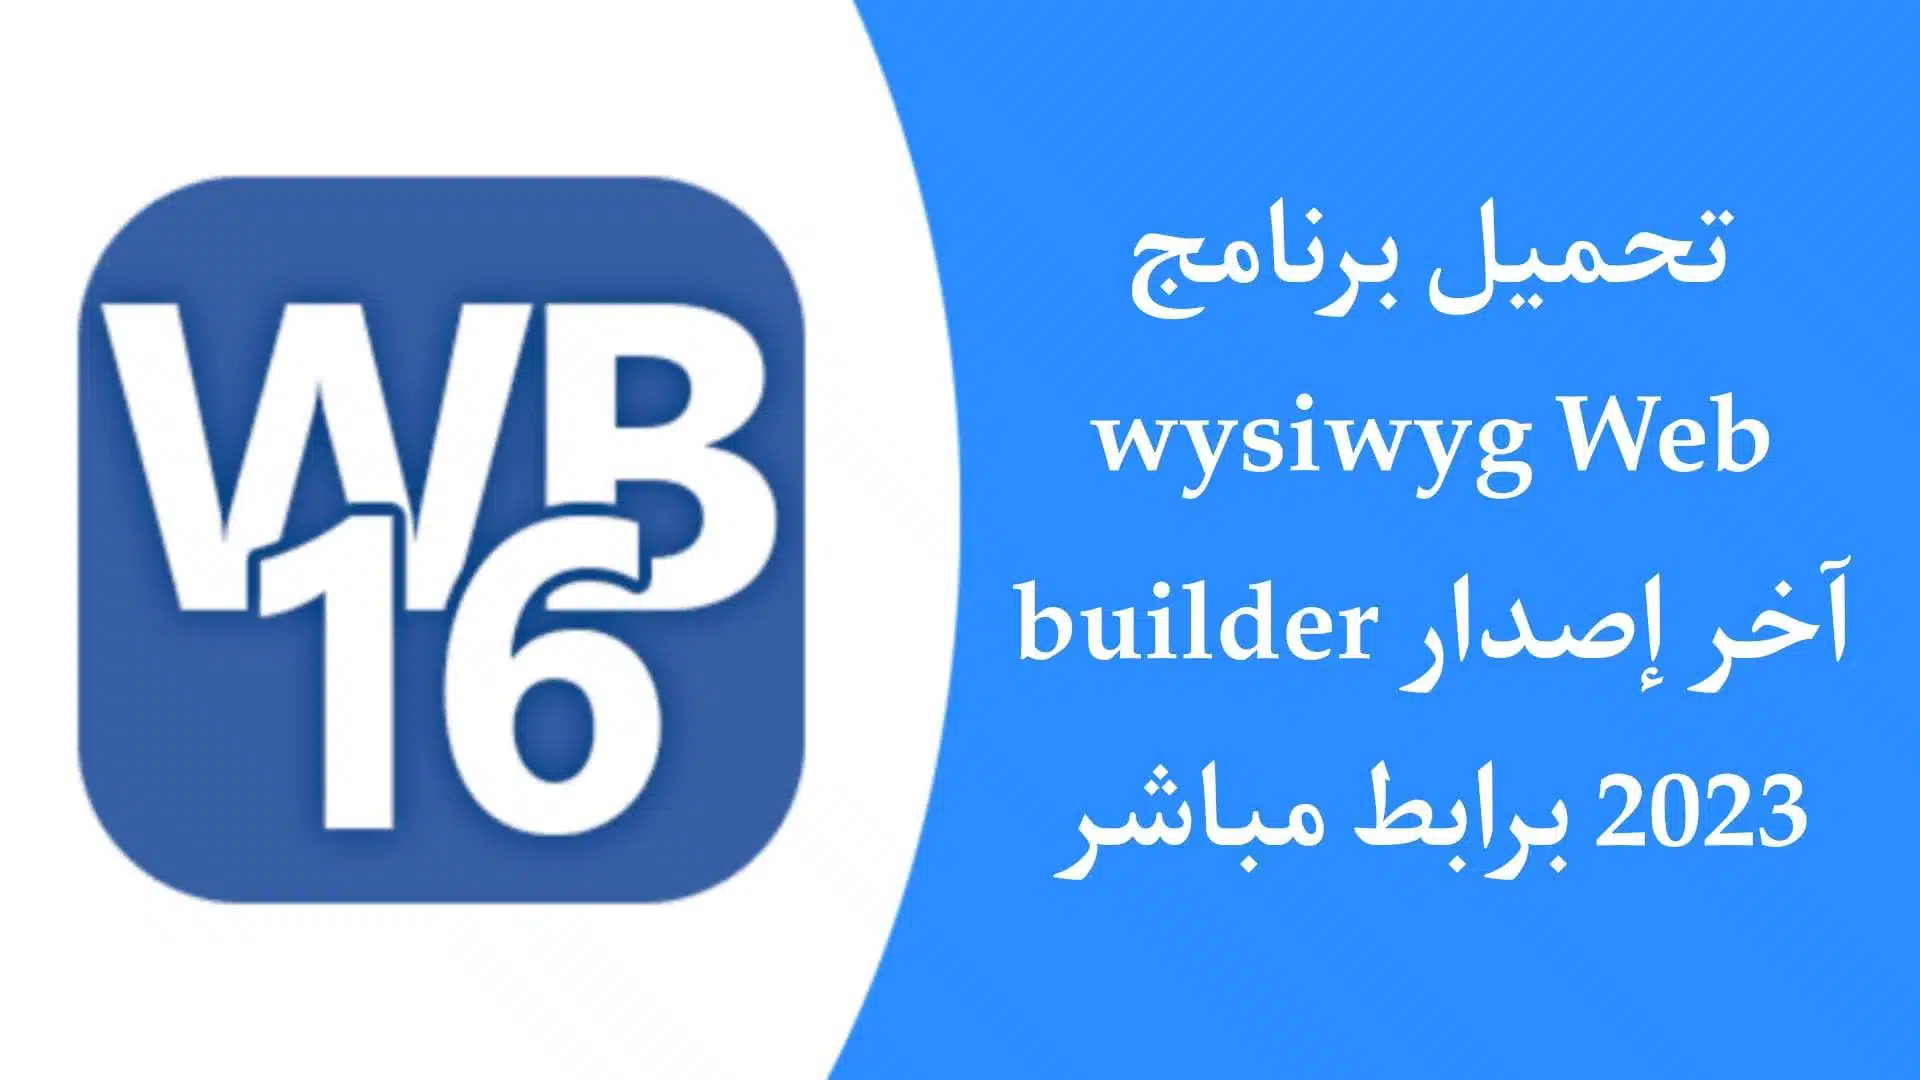 تحميل برنامج WYSIWYG Web Builder لتطوير وتصميم المواقع مجانا 2023